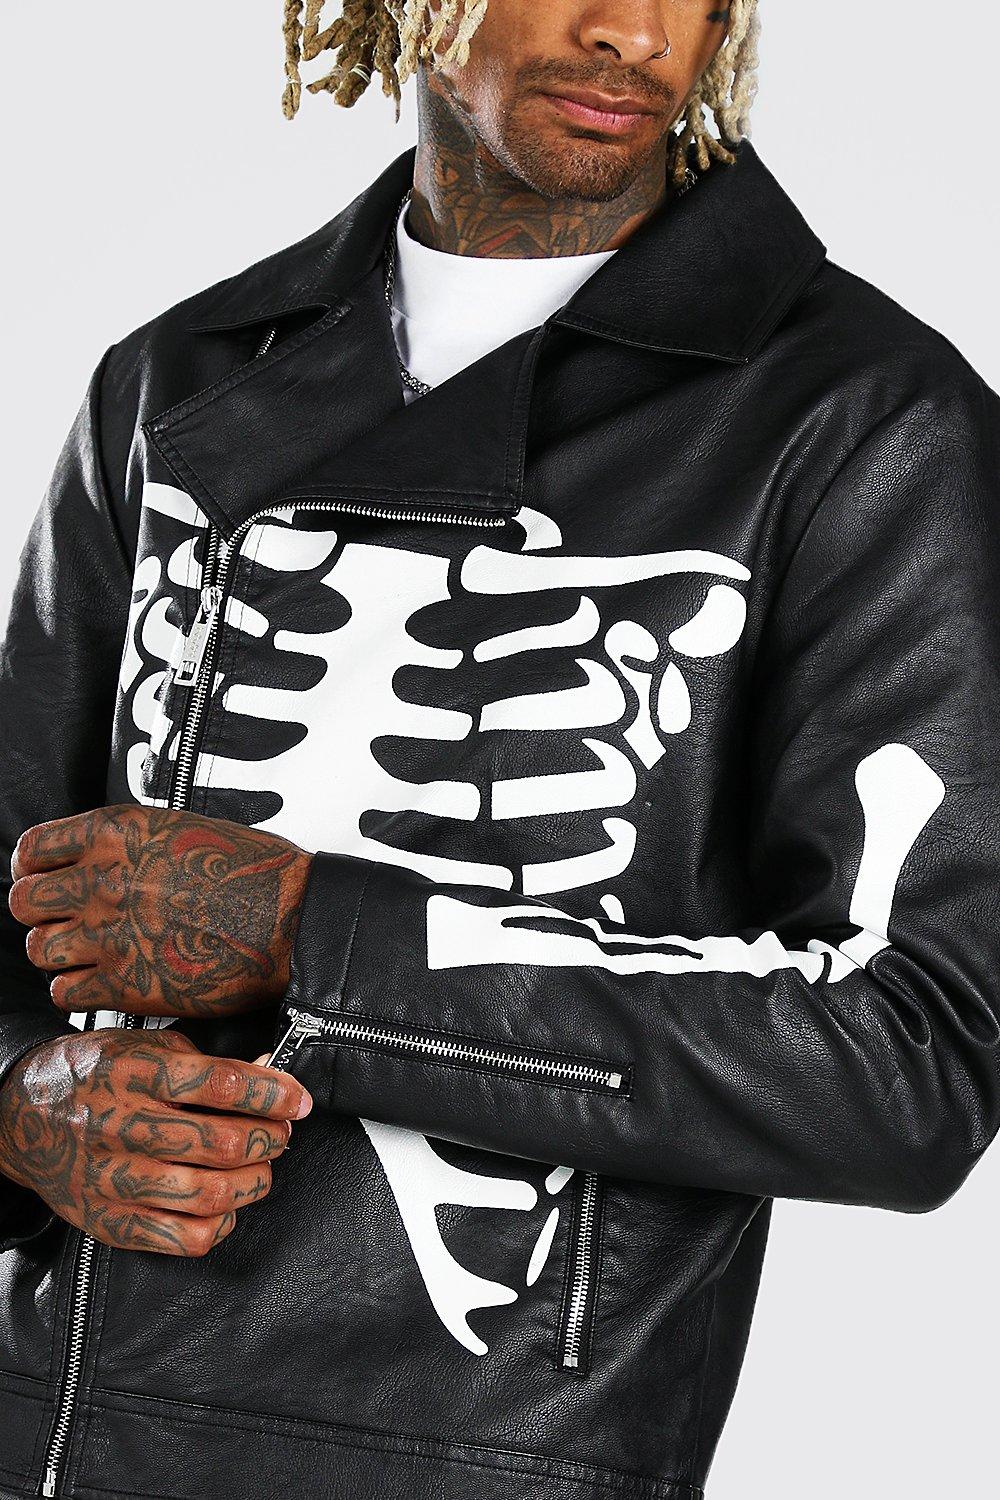 Black Leather Biker Jacket With Skull Printed Sleeves